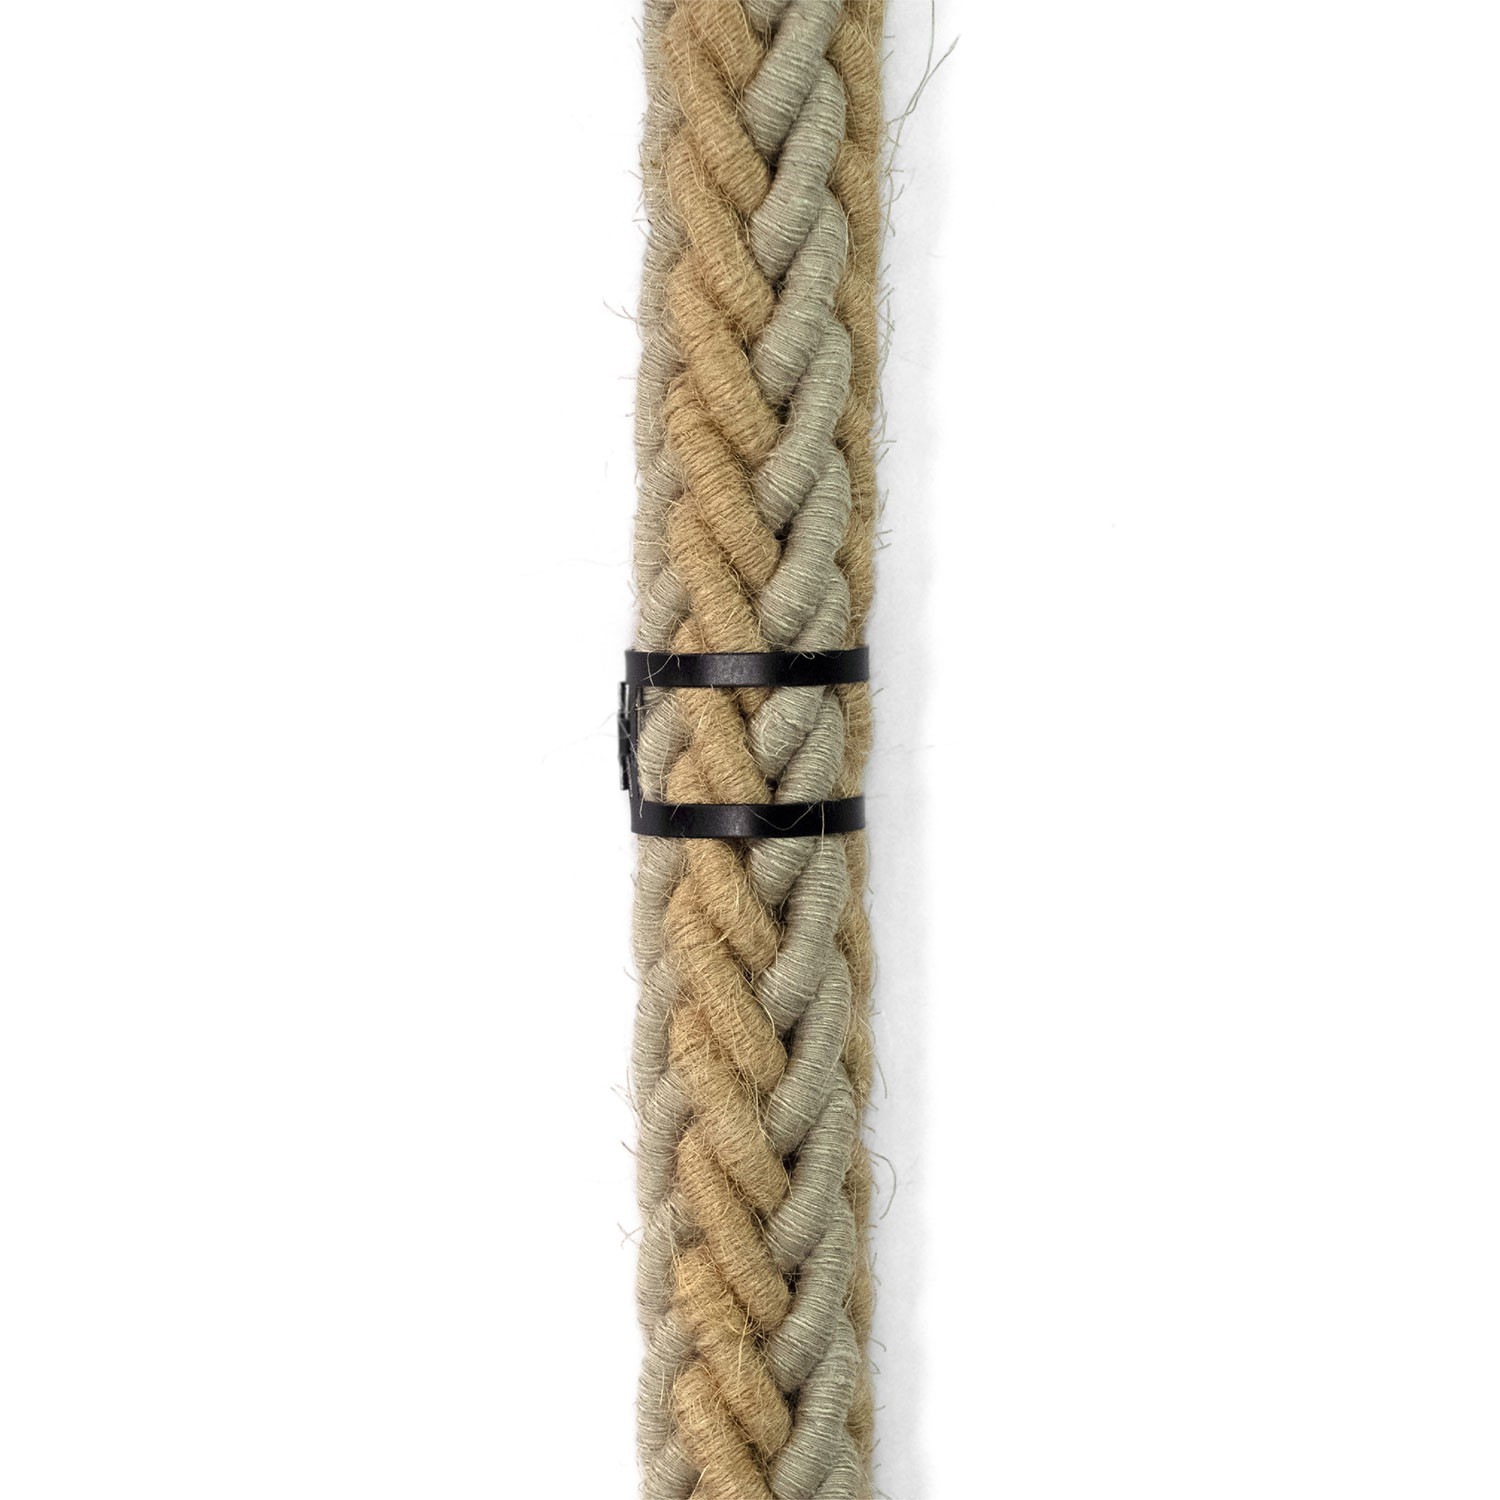 Clip de sujeción de cable metálico para cordón de 24 mm de diámetro